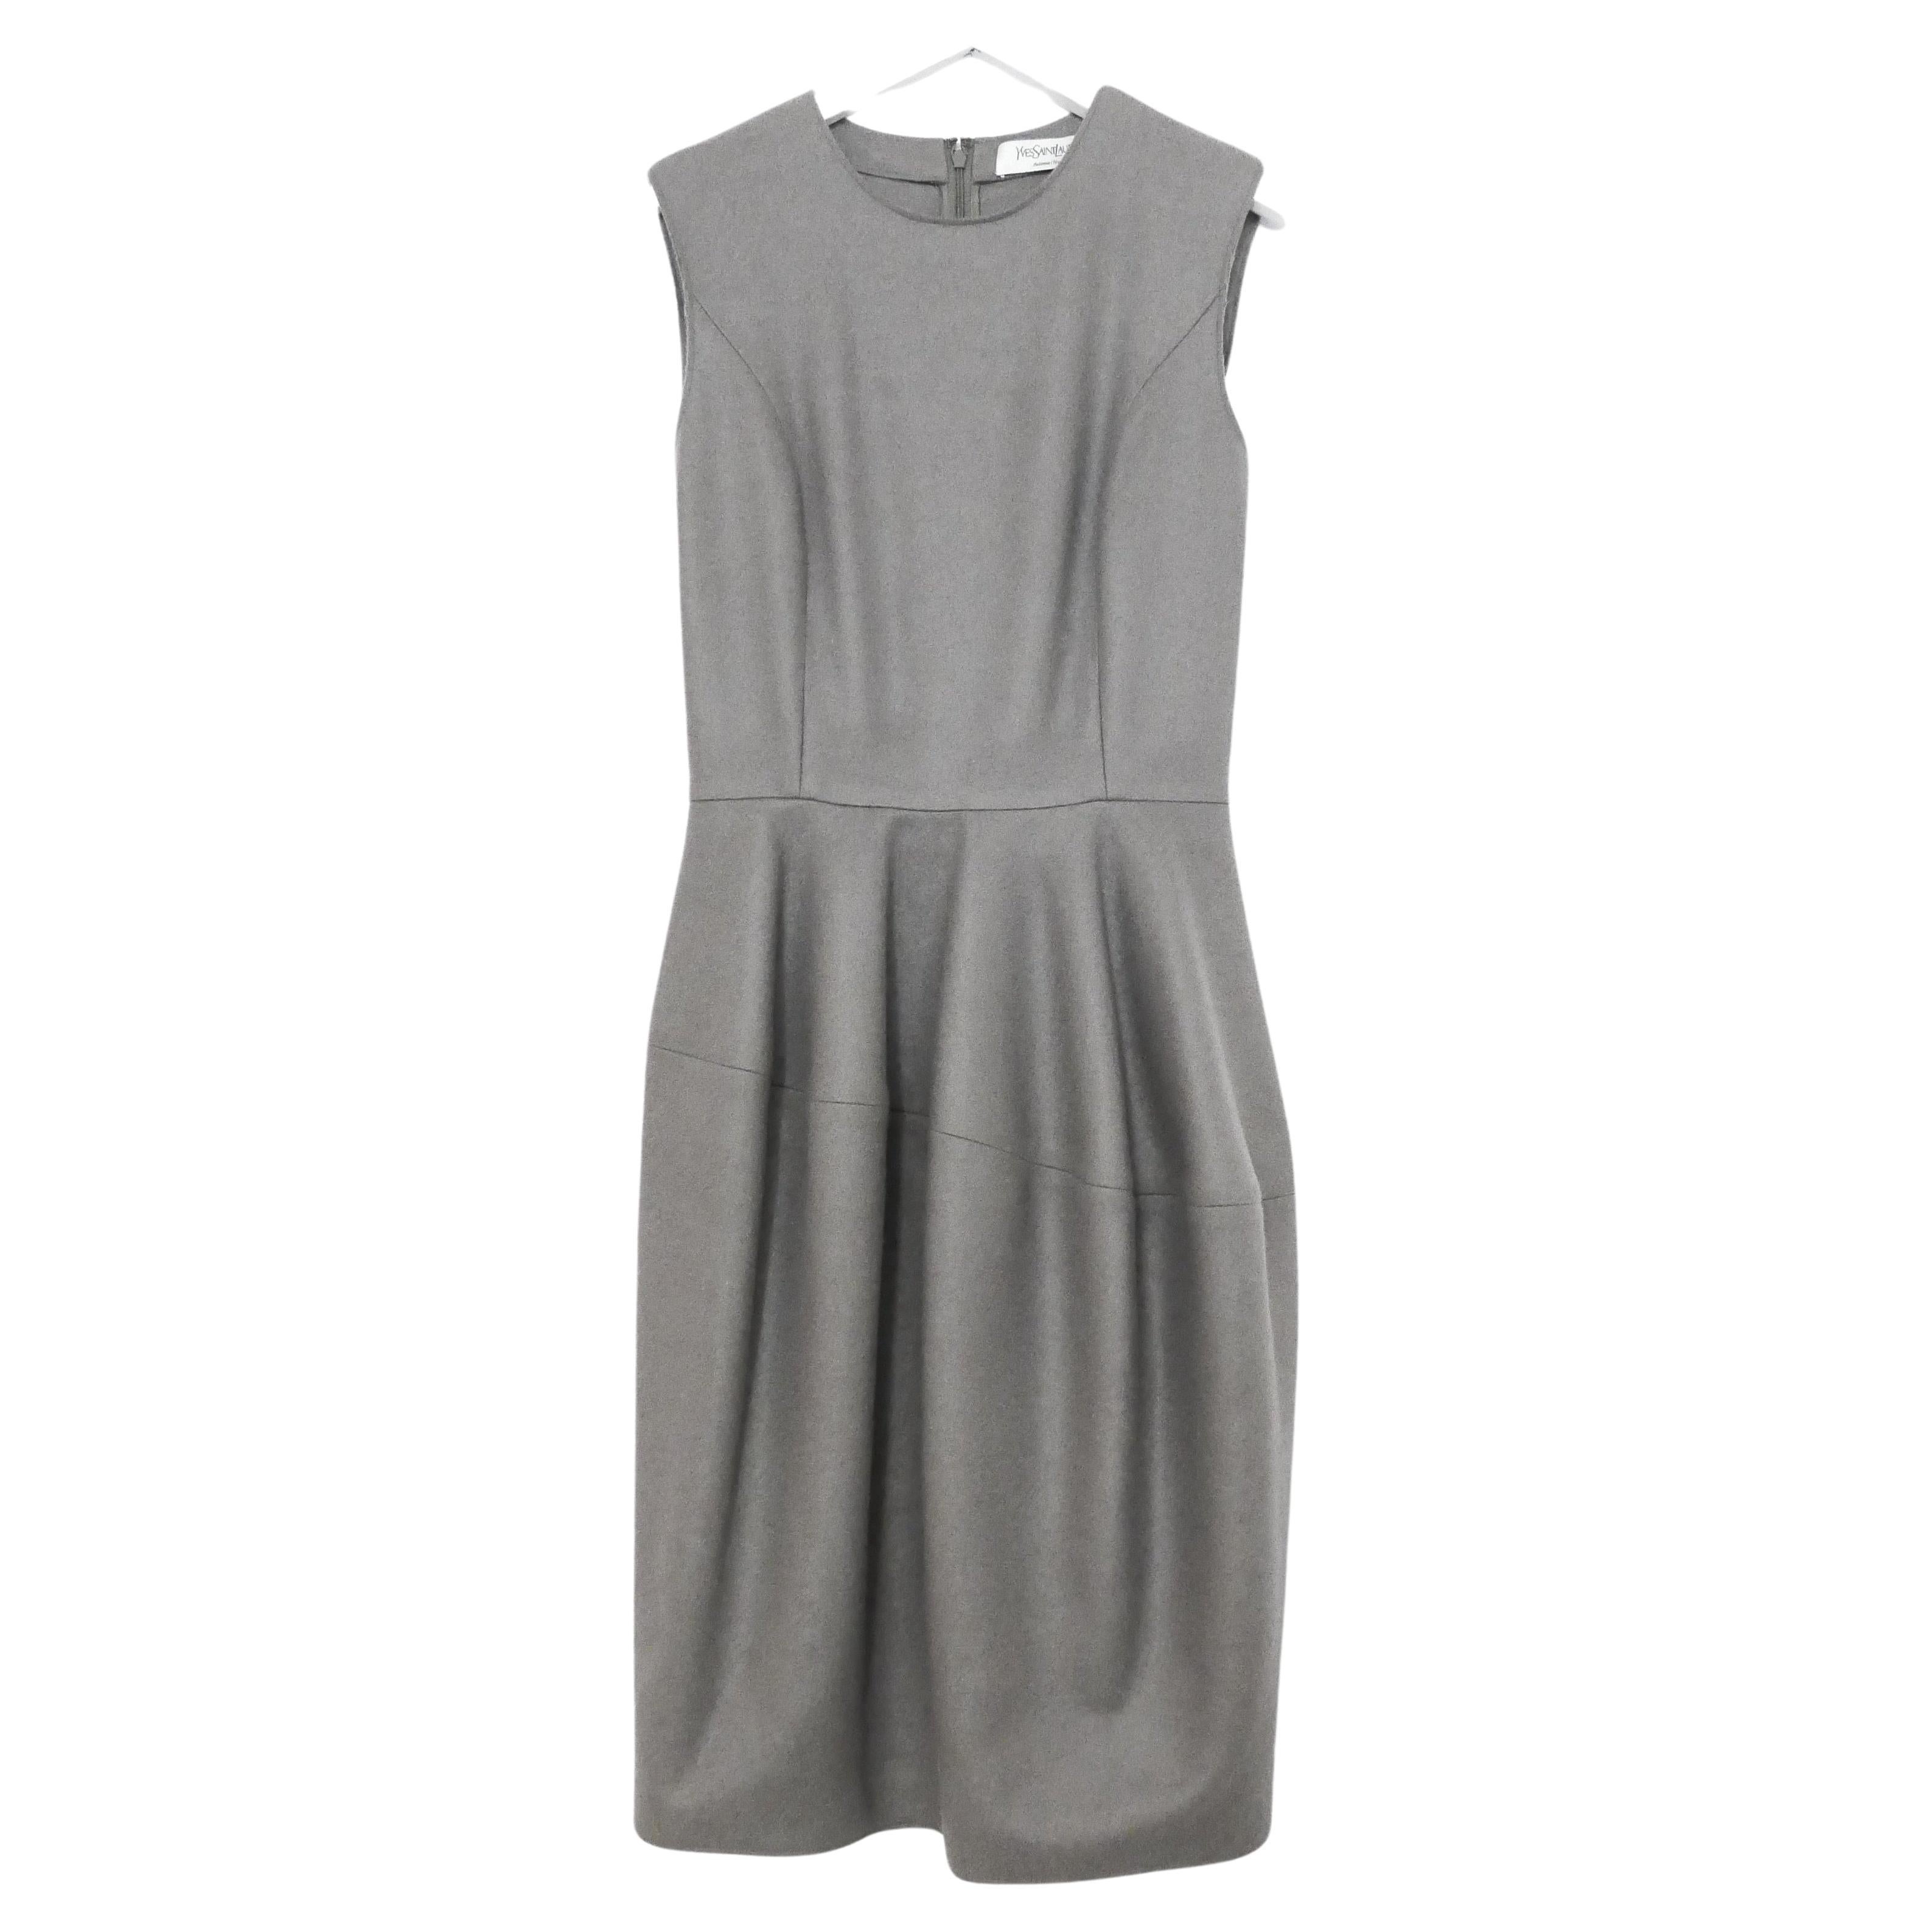 Yves Saint Laurent x Stefano Pilati 2008 Grey Cashmere Bell Skirt Dress For Sale